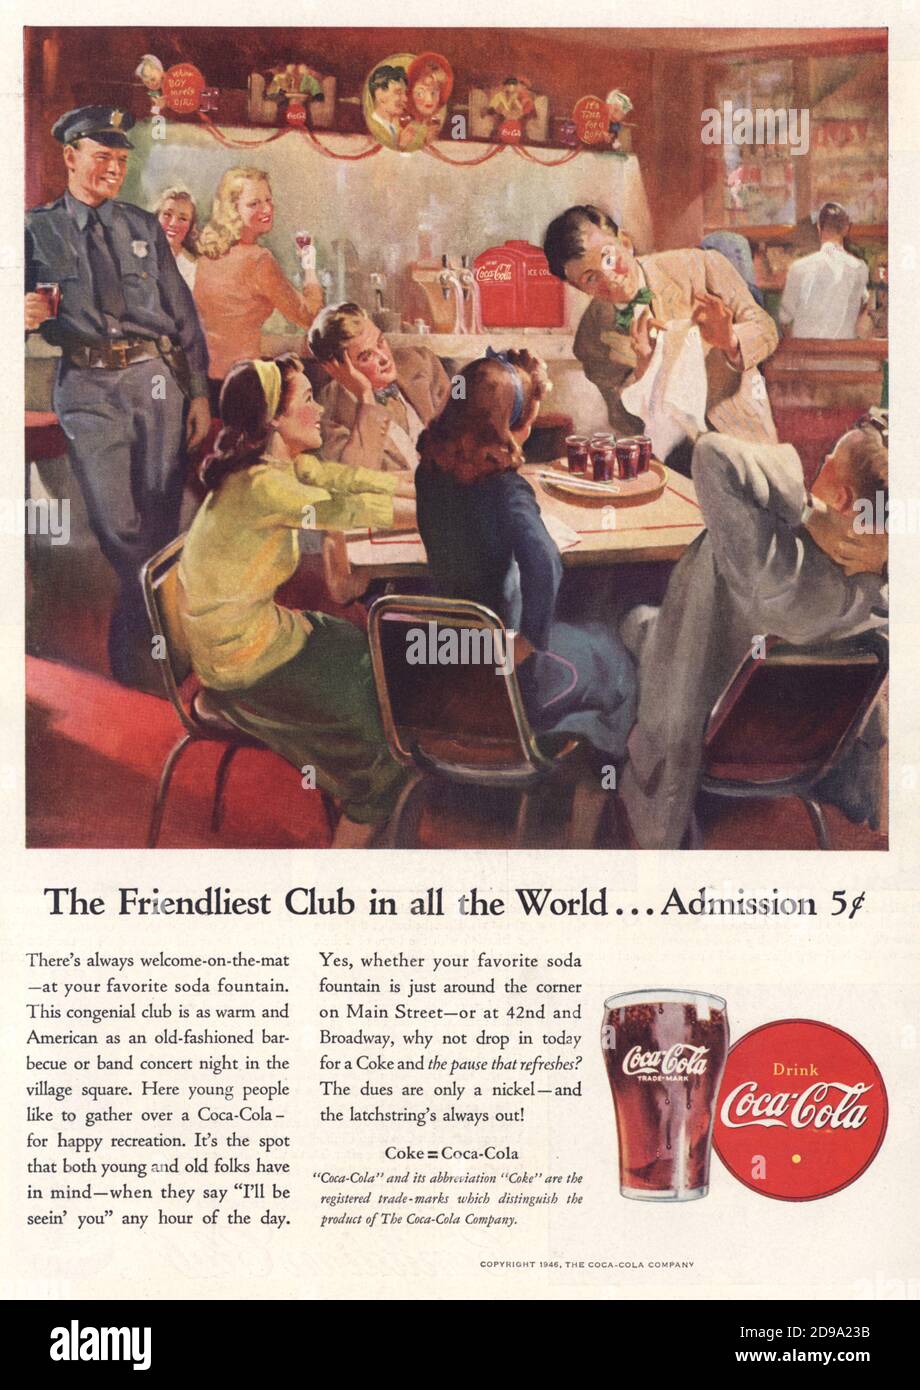 1946 , USA : Werbung für die amerikanische COCA COLA FIRMA Drink - COKE - INDUSTRY - bibite gassate - PUBBLICITA' - PUBBLICITY - ANNUNCIO PUBBLICITARIO - ANNI QUARANTA - '40 - 40s - Drougstore - Bar - Illustration - illustrazione ------- NICHT FÜR WERBEZWECKE ---- NON PER USO PUBBLICITARIO ---- NICHT FÜR GADGET ------ © Archivio GBB / Stockfoto